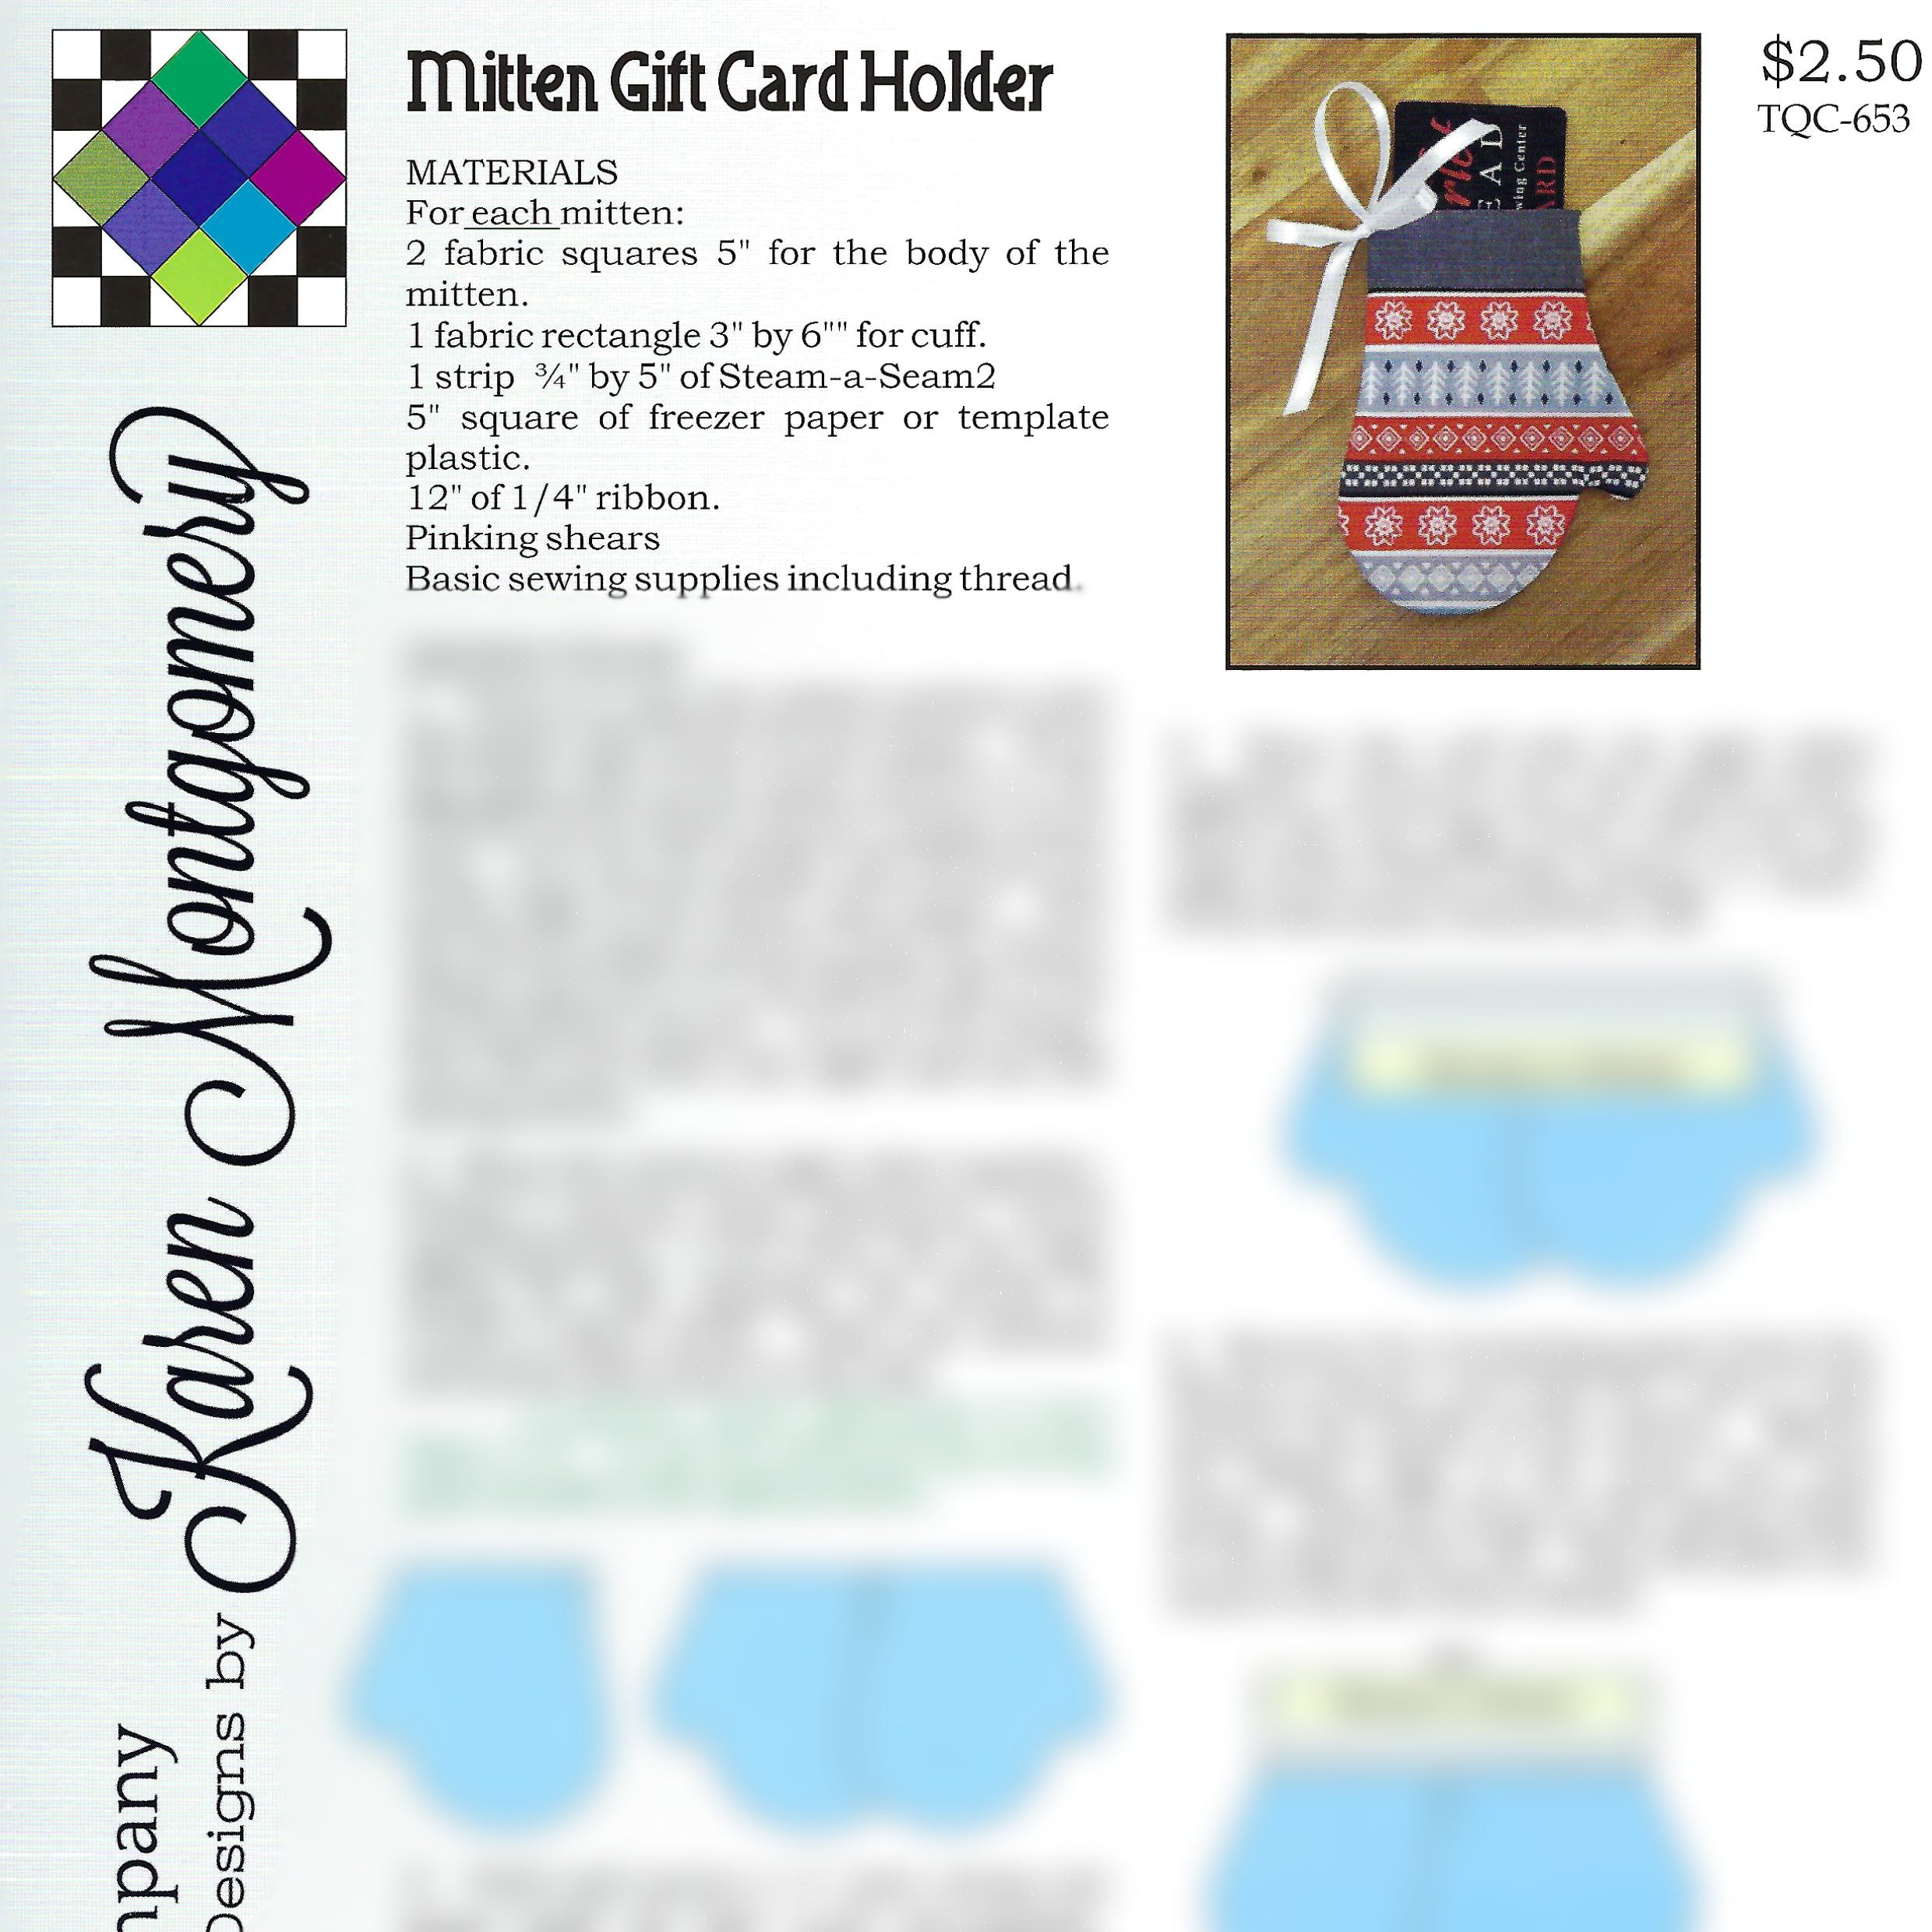 Mitten Gift Card Holder Project Sheet